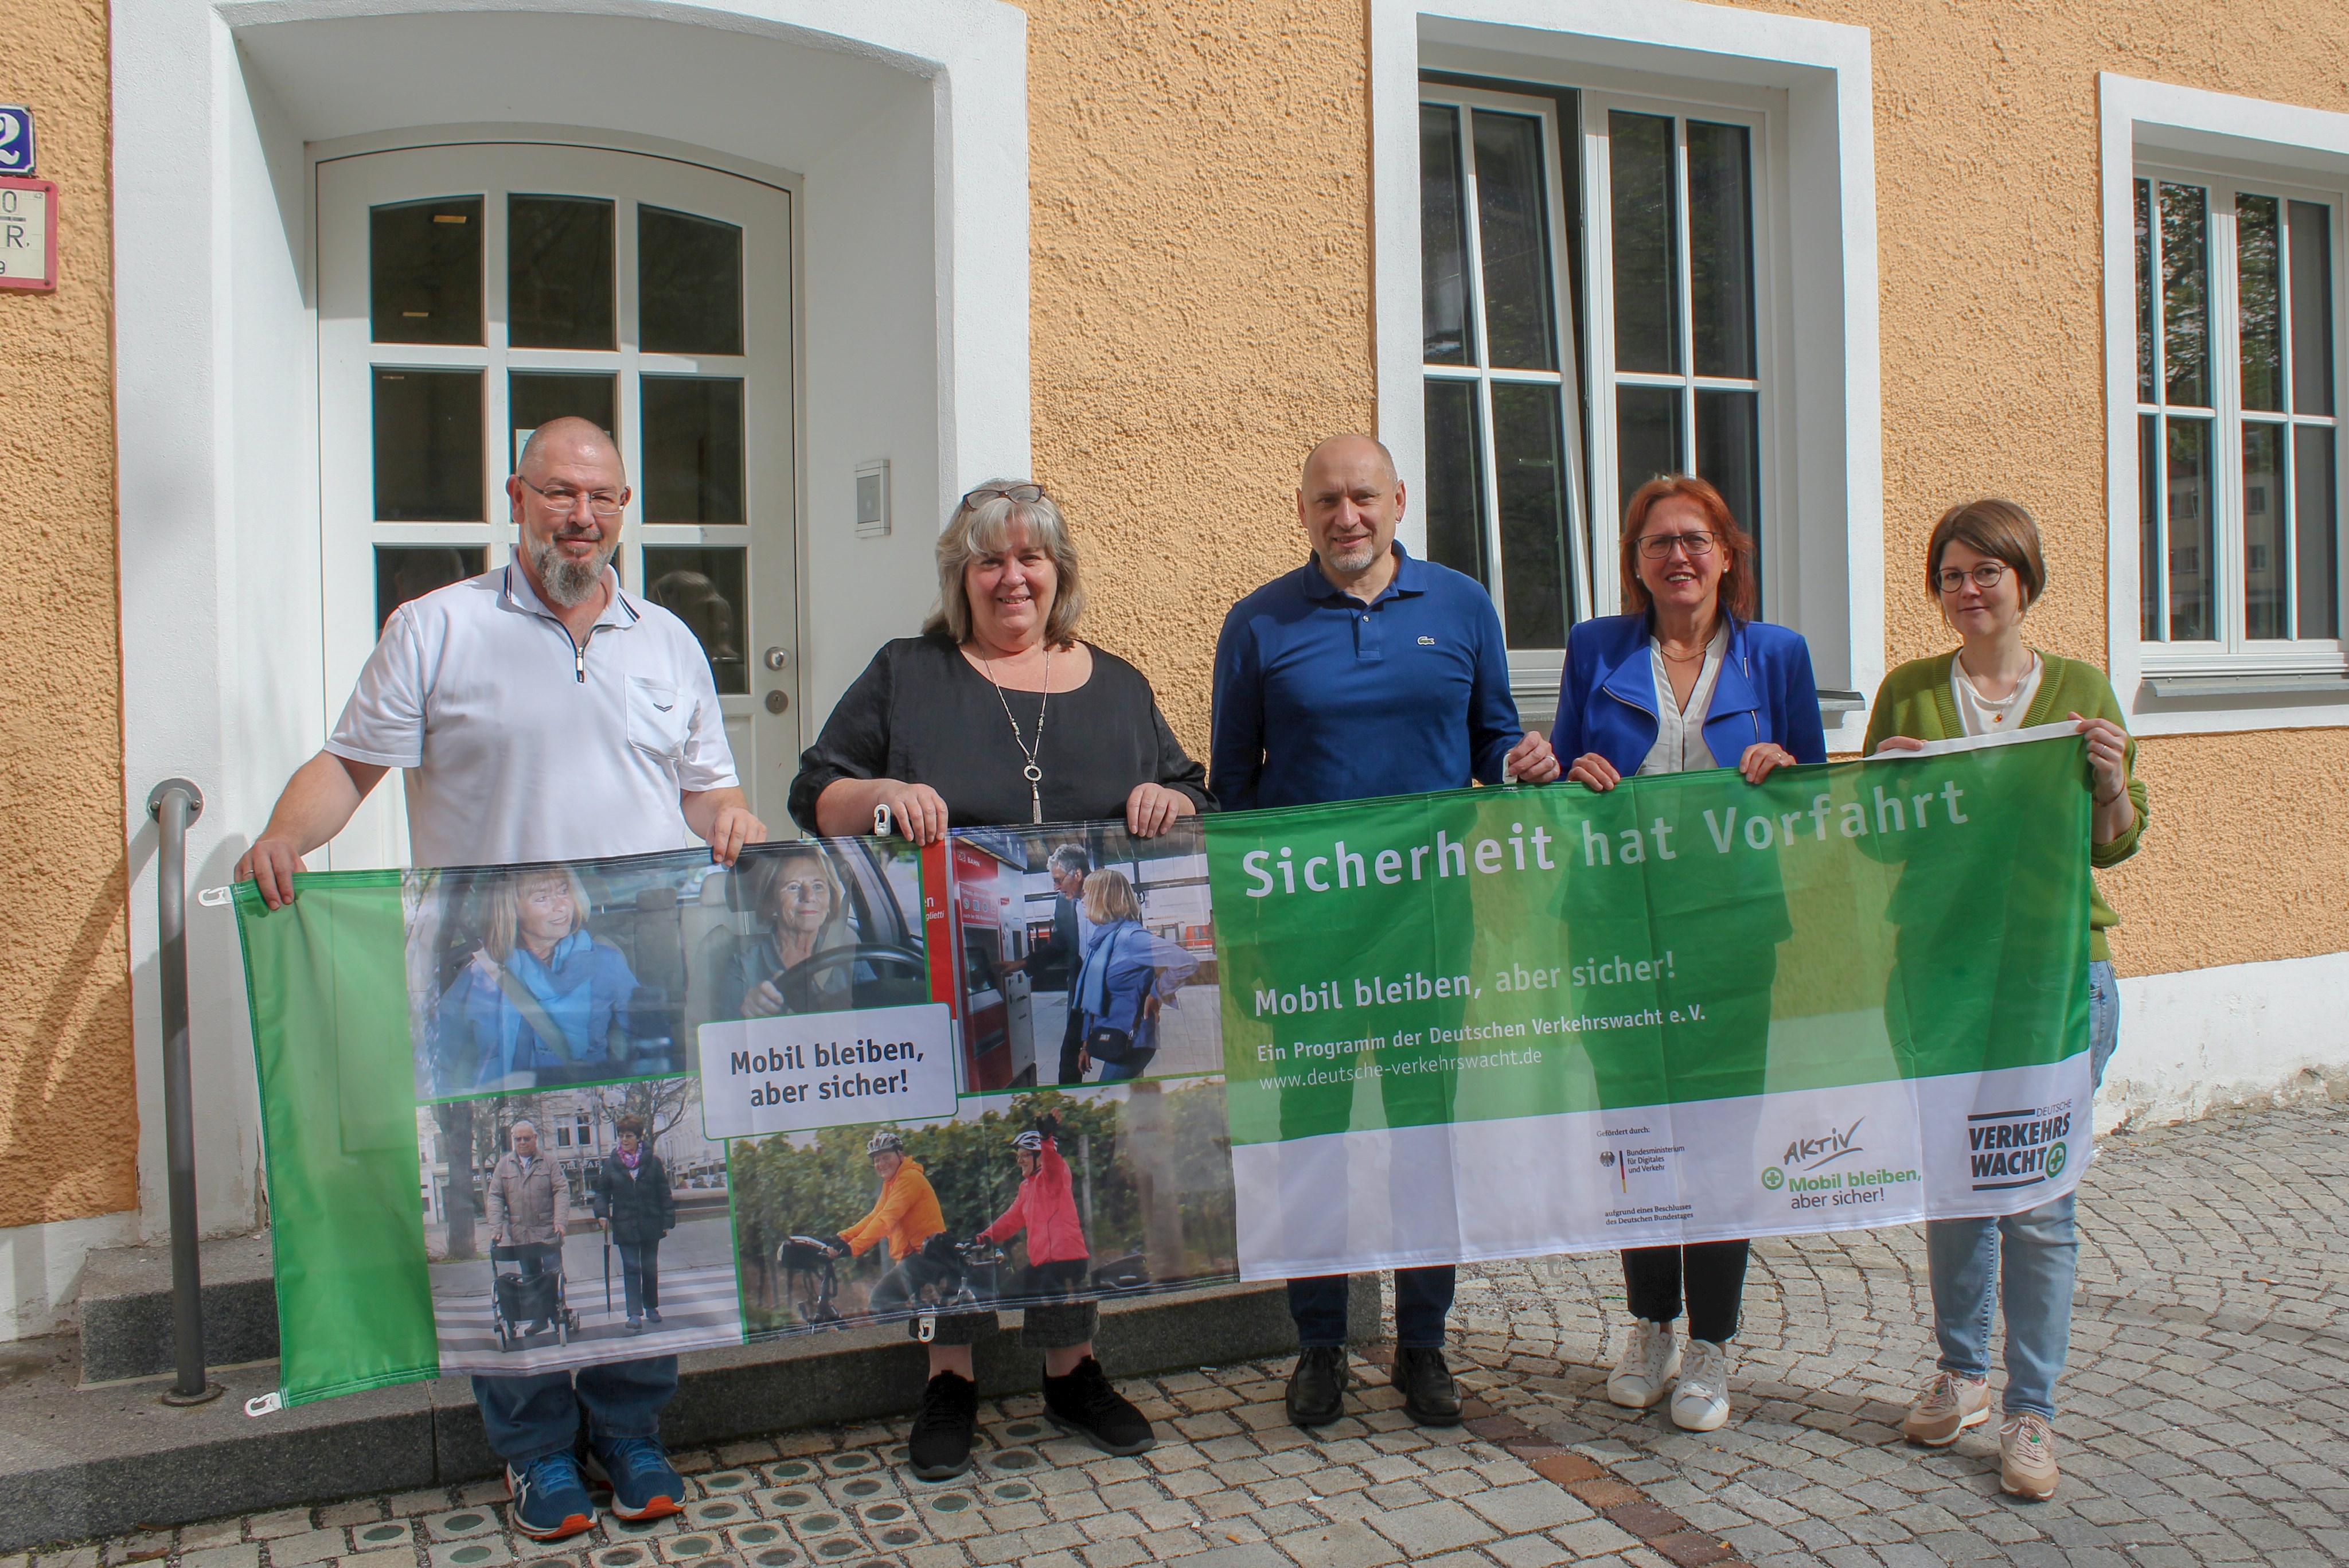 Matthias Schuchna, Petra Traboulsi, Oliver Schmidt, Gisela Stagat und Antje Neumann stellten besondere Angebote für Senioren vor.